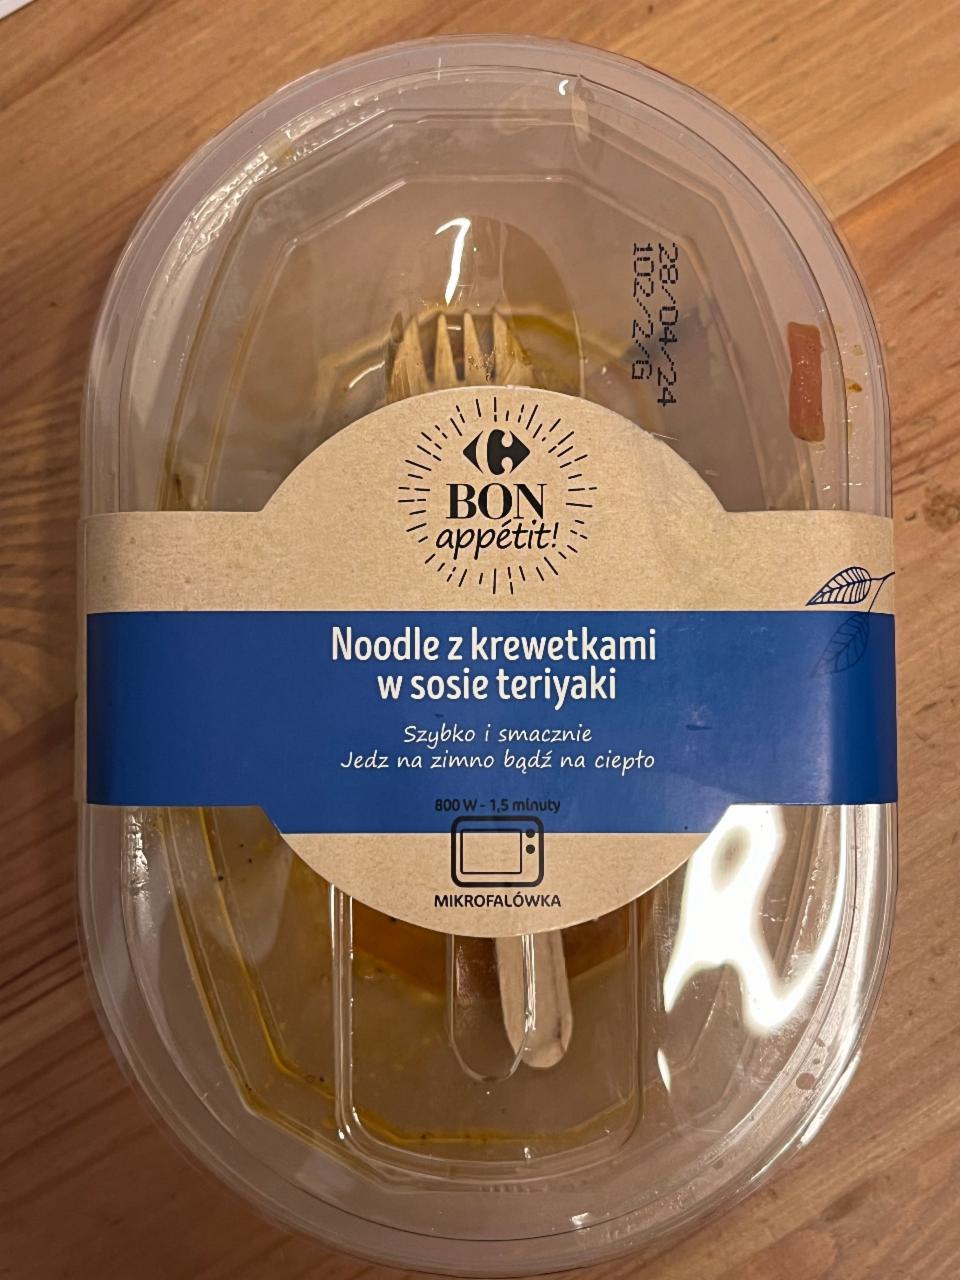 Фото - Noodle z krewetkami w sosie Teriyaki Bon appetit